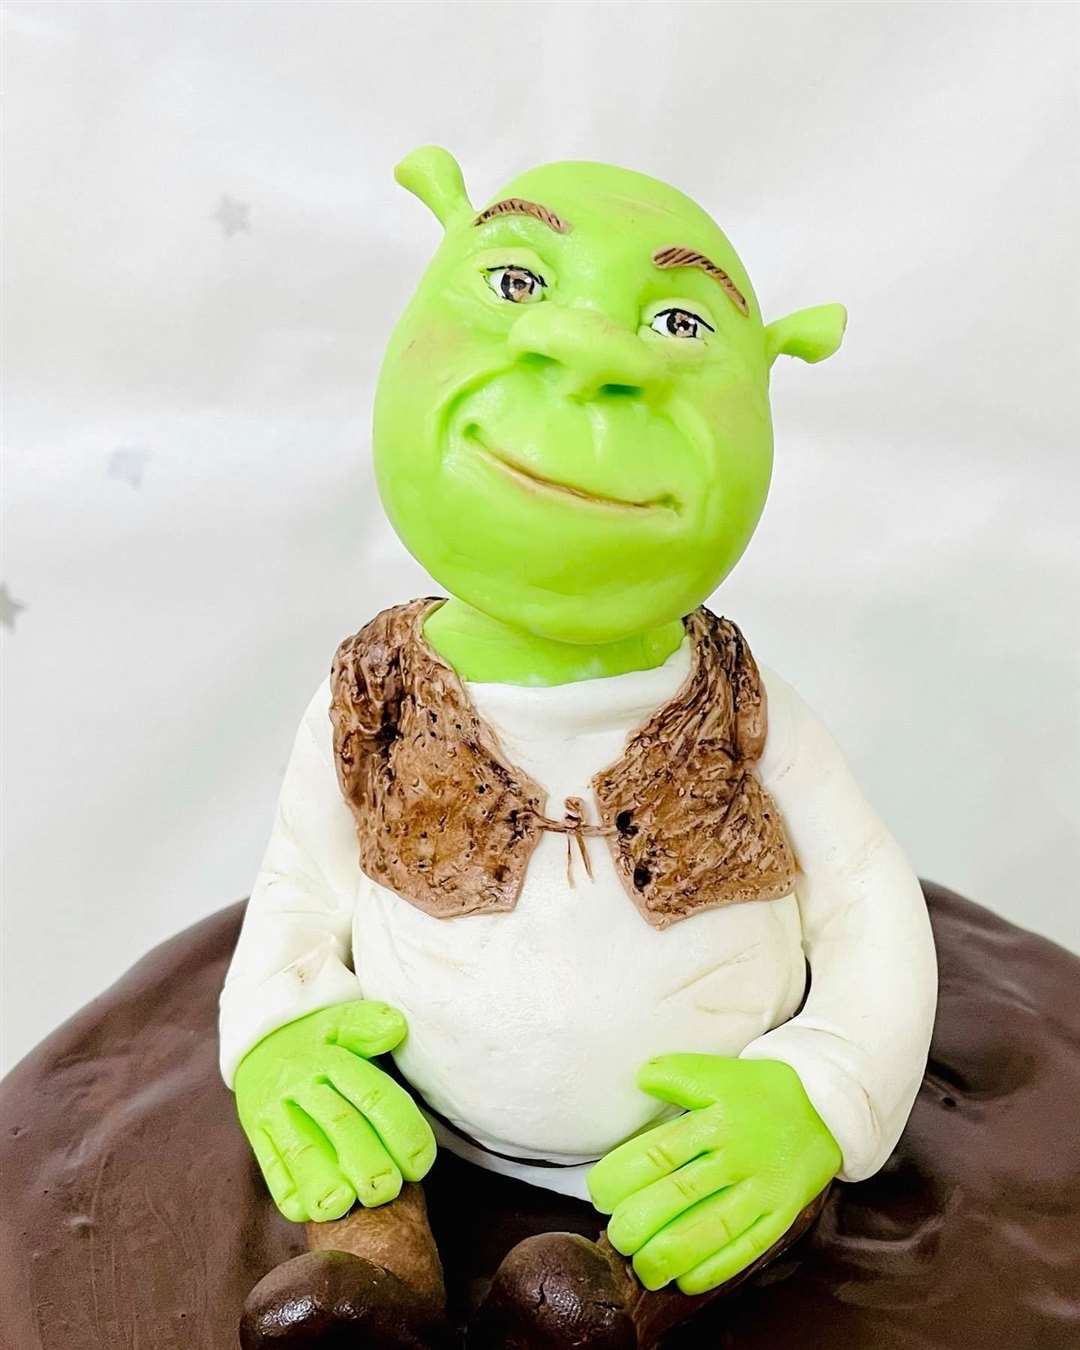 Character Shrek, rendered in cake